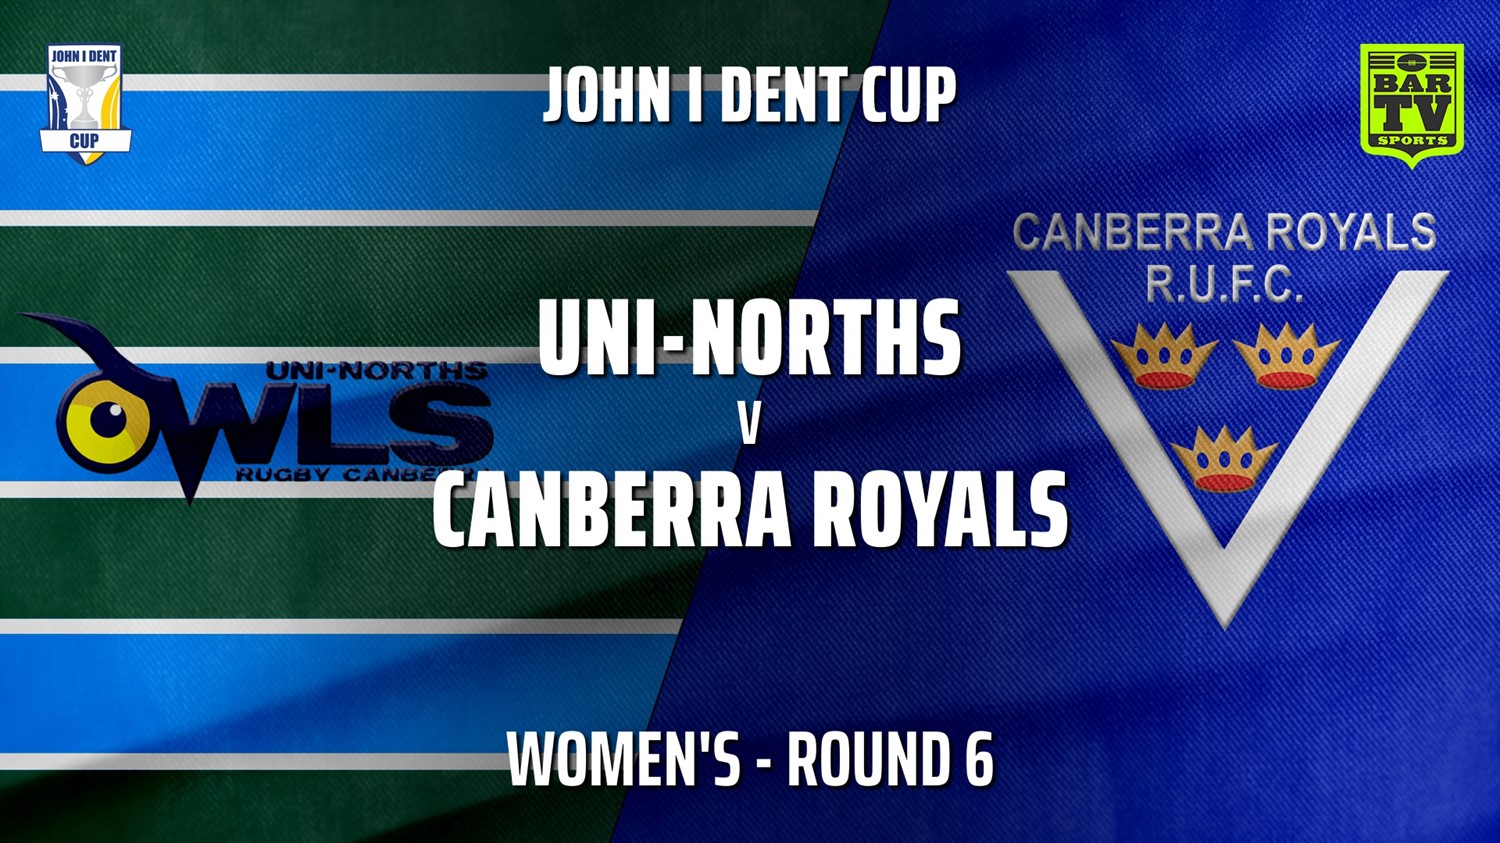 210529-John I Dent Round 6 - Women's - UNI-Norths v Canberra Royals Slate Image